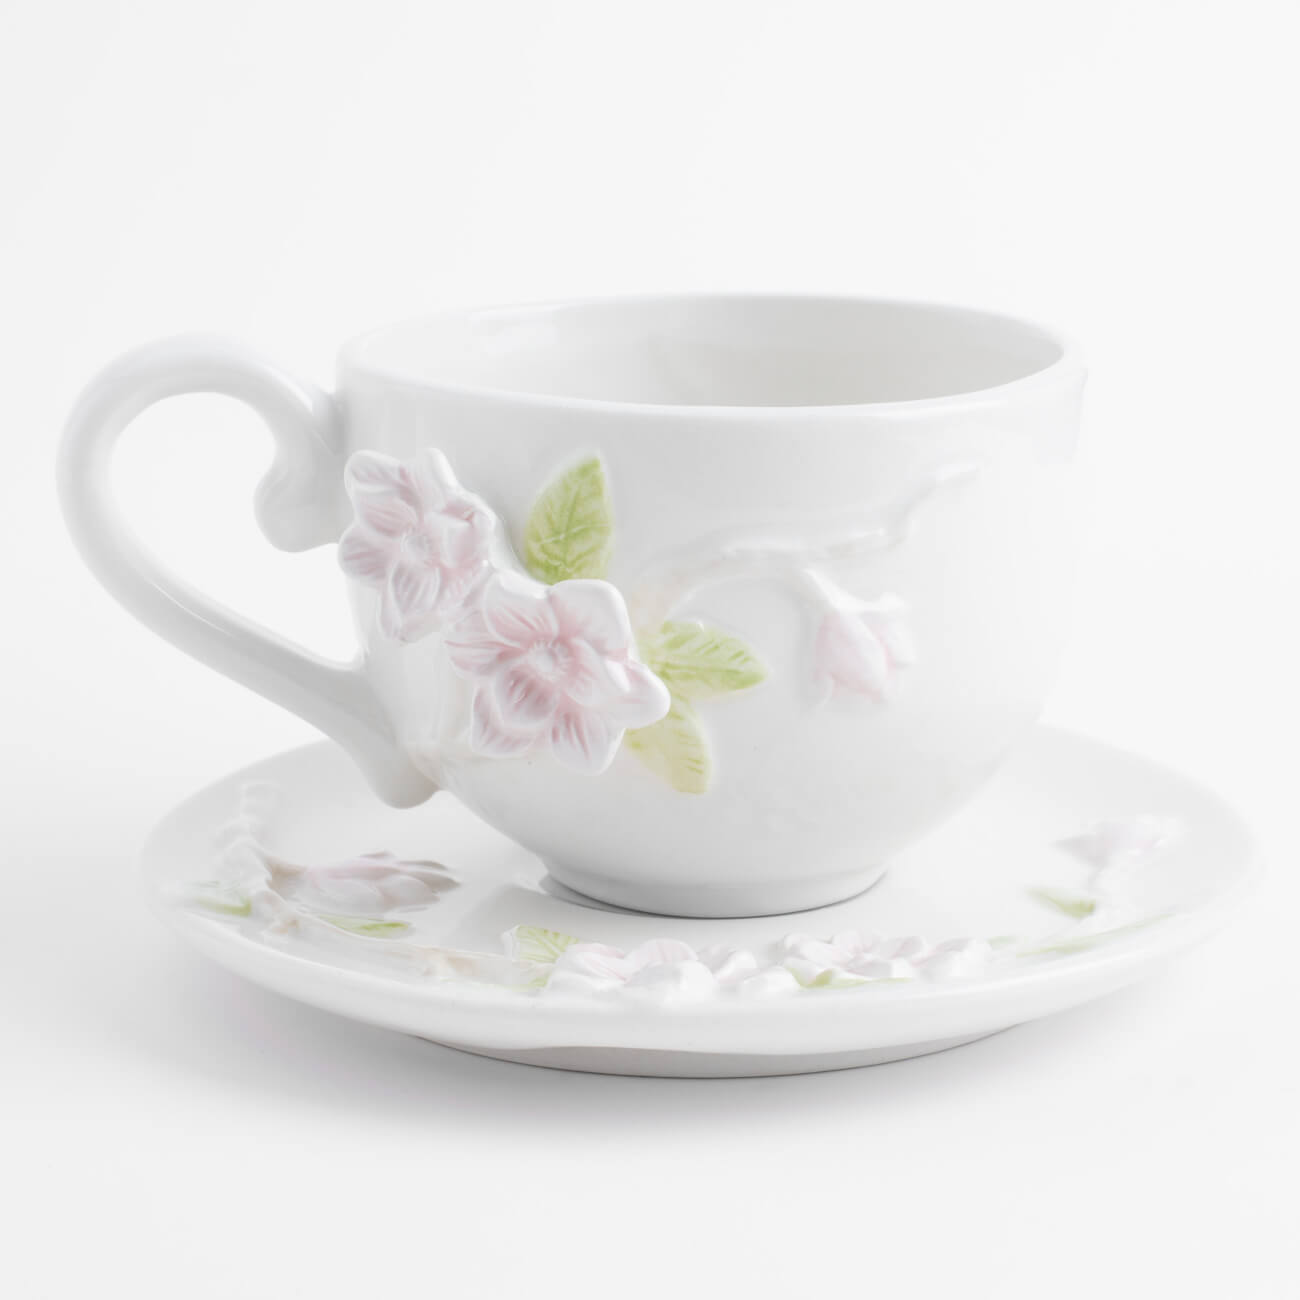 Пара чайная для завтрака, 1 перс, 2 пр, 420 мл, керамика, молочная, Цветы магнолии, Magnolia чайная пара gold кружка 200 мл блюдце 13 см